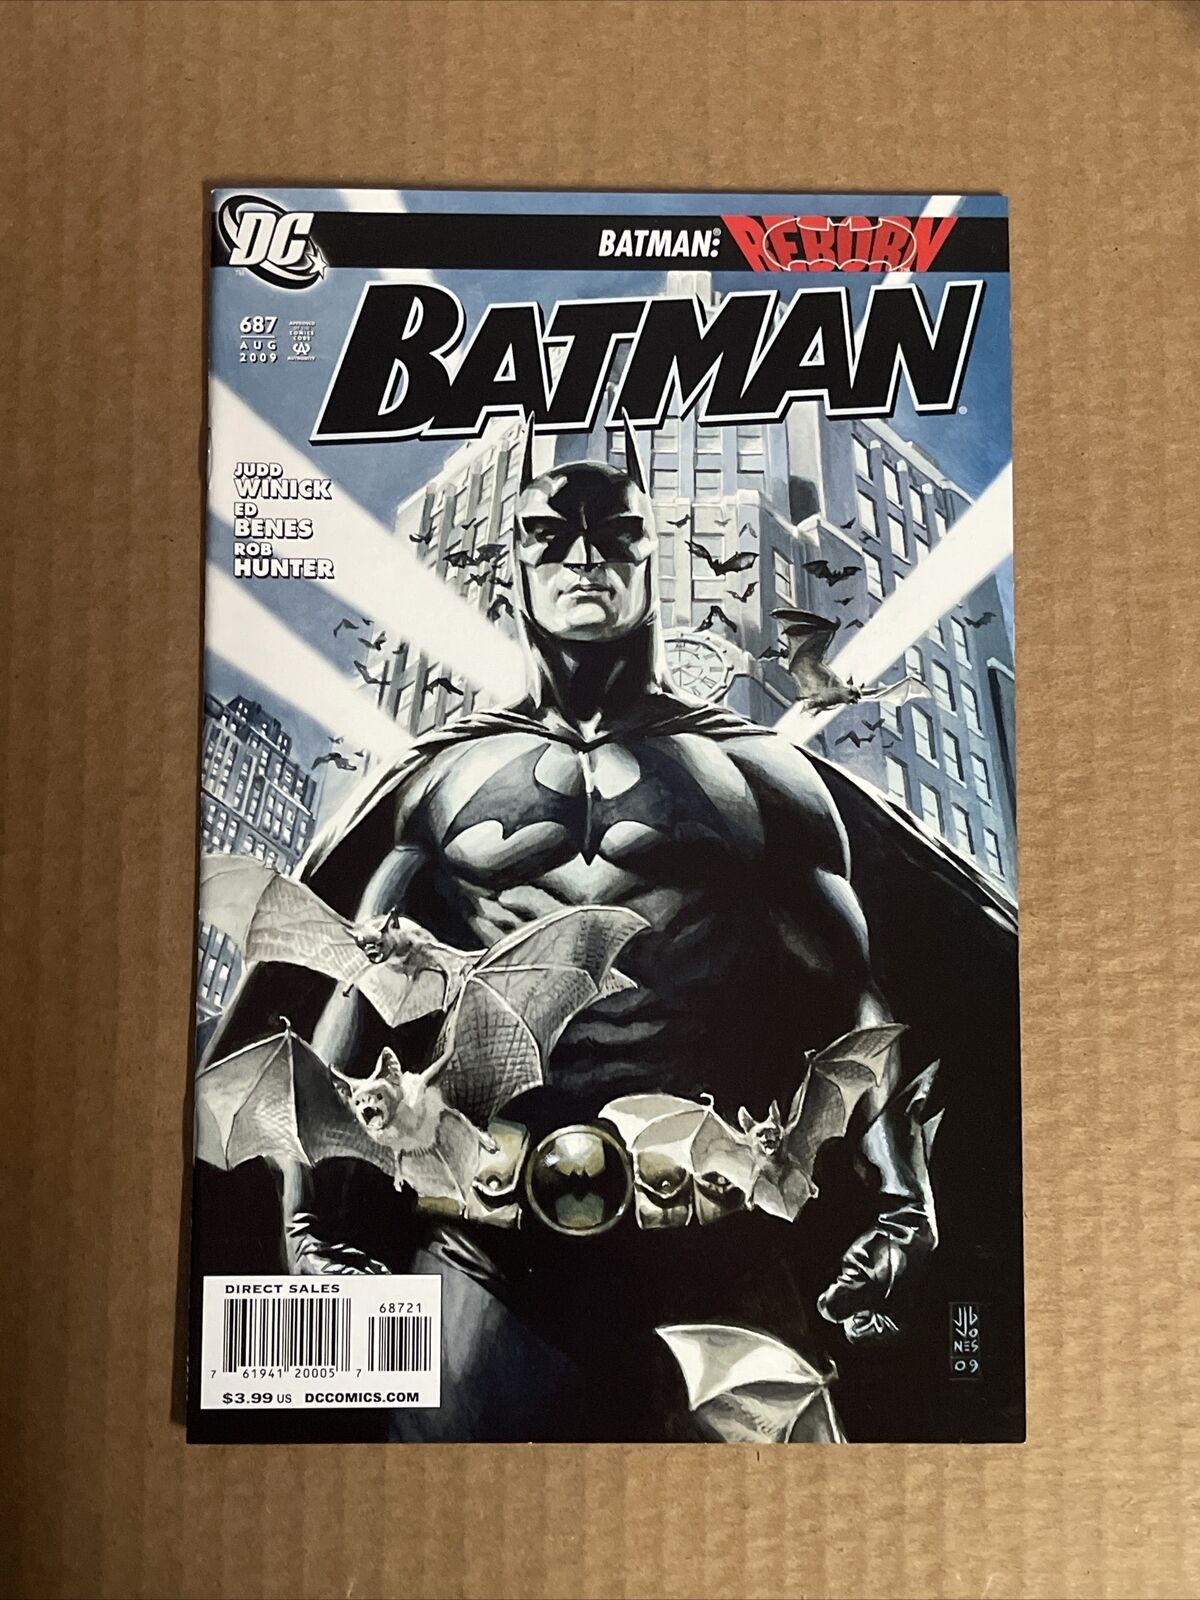 BATMAN #687 J.G. JONES 1:10 VARIANT FIRST PRINT DC COMICS (2009) REBORN